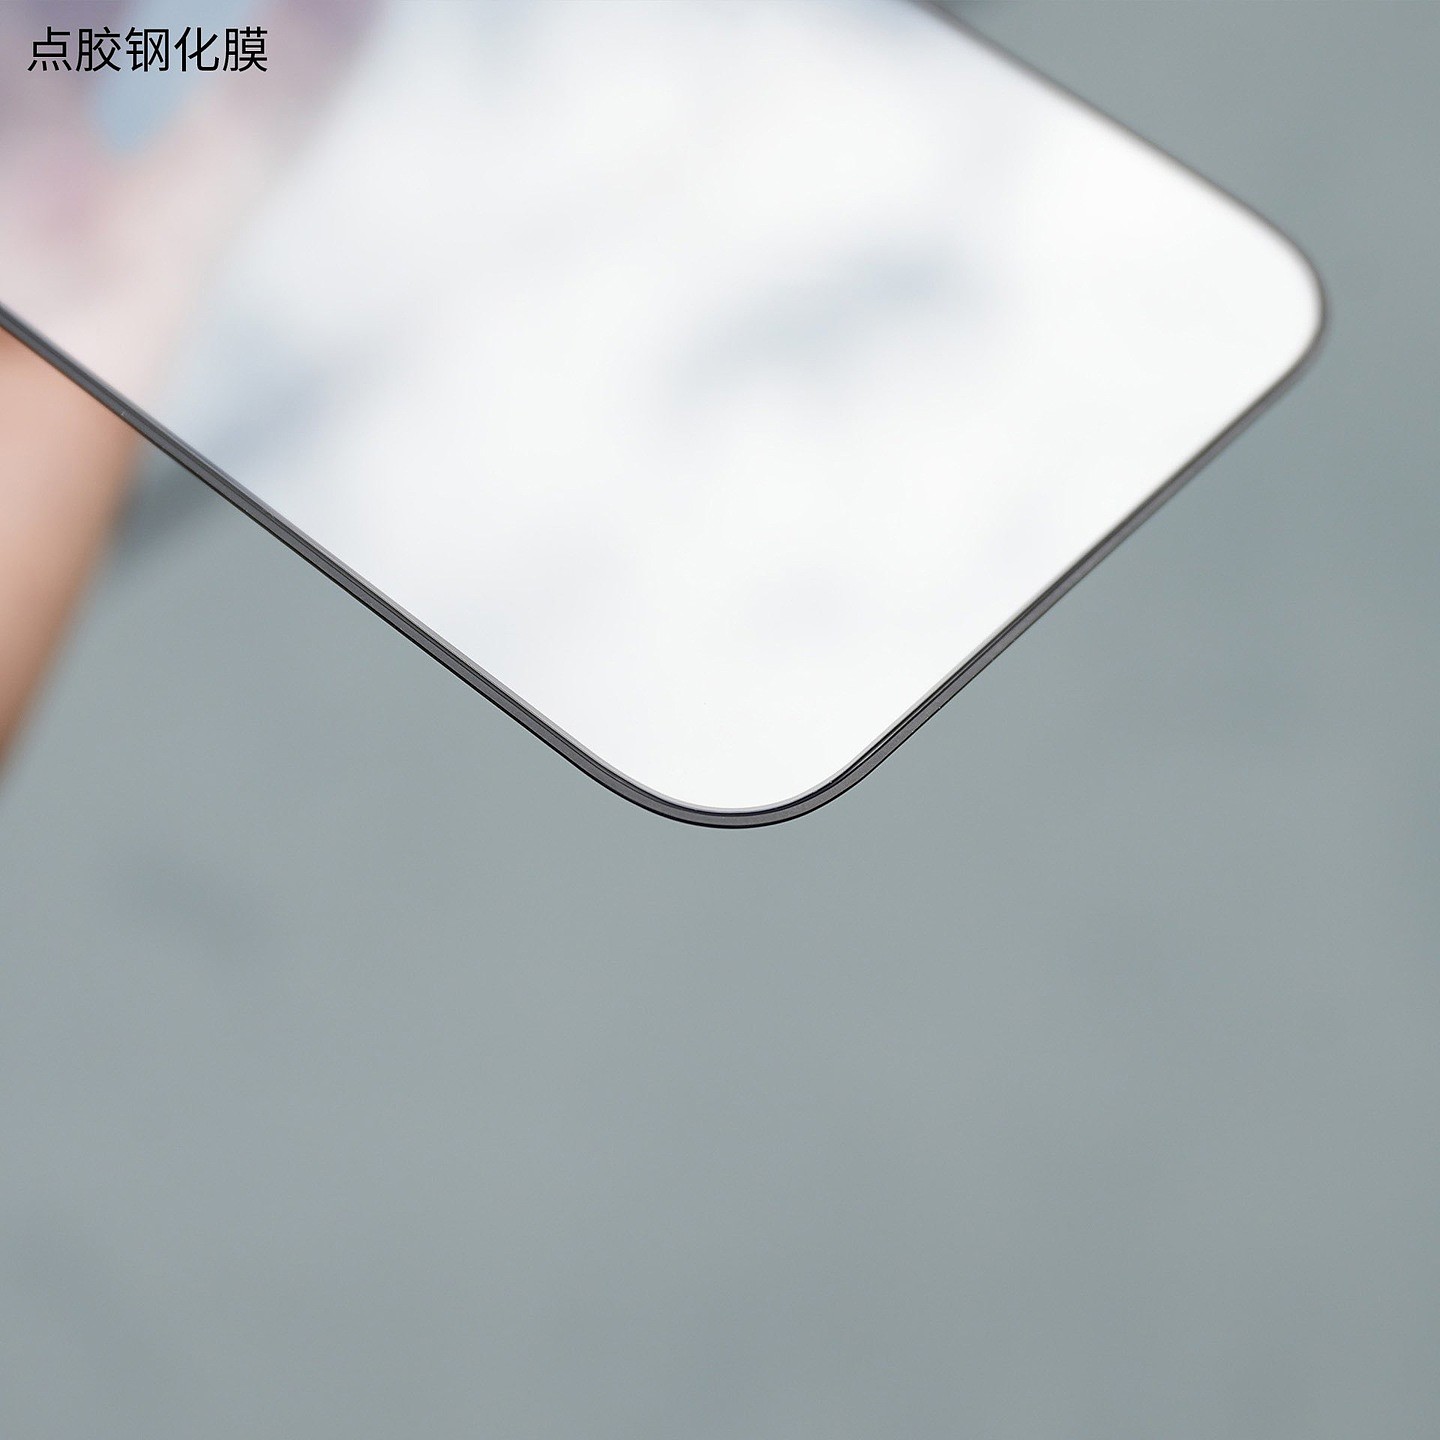 苹果 iPhone 15 系列钢化膜照片曝光 - 5